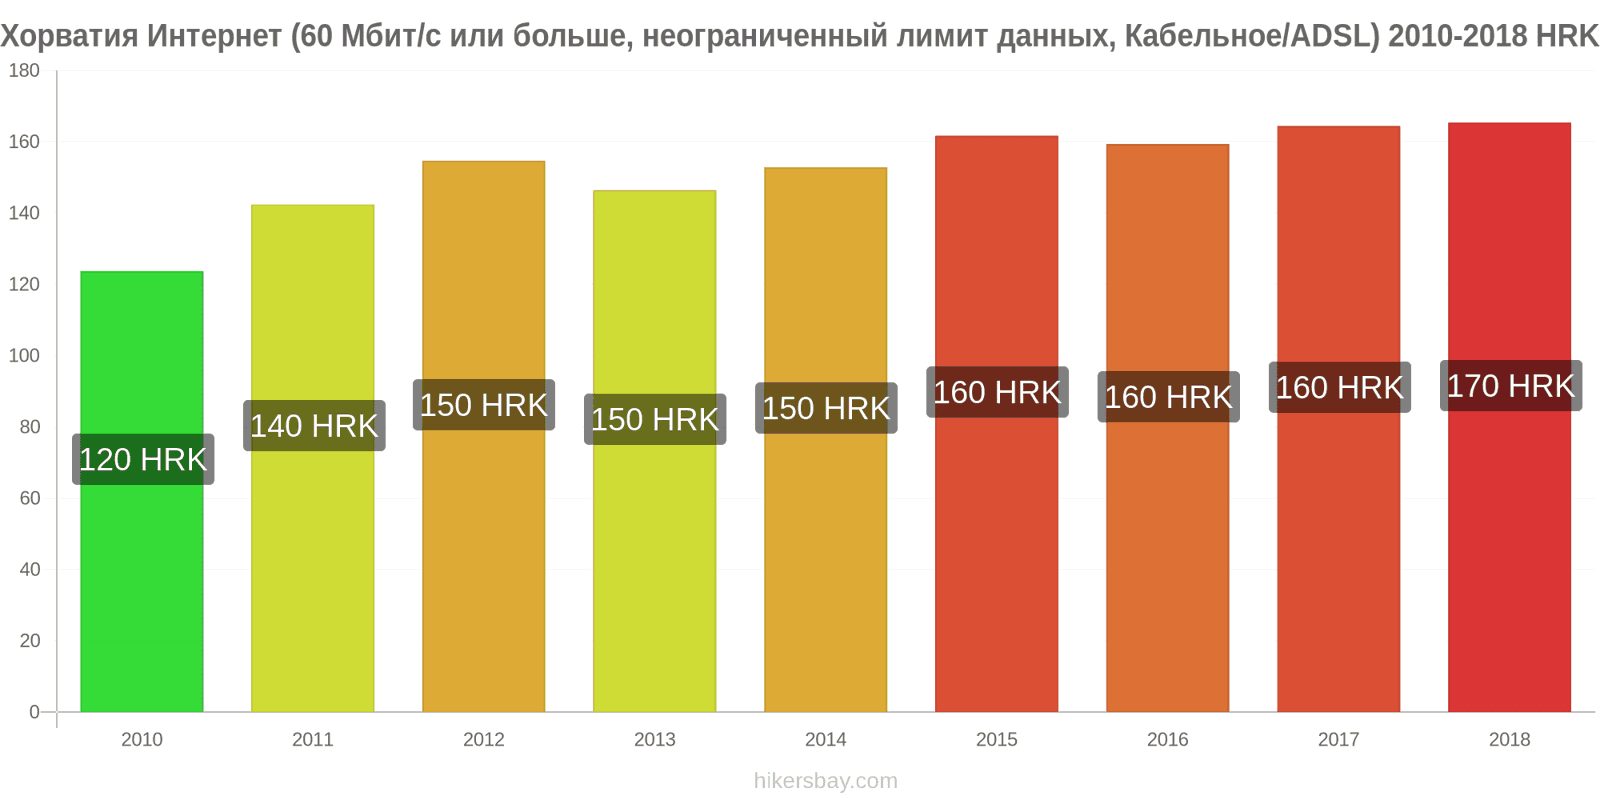 Хорватия изменения цен Интернет (60 Мбит/с или больше, неограниченный лимит данных, кабель/ADSL) hikersbay.com